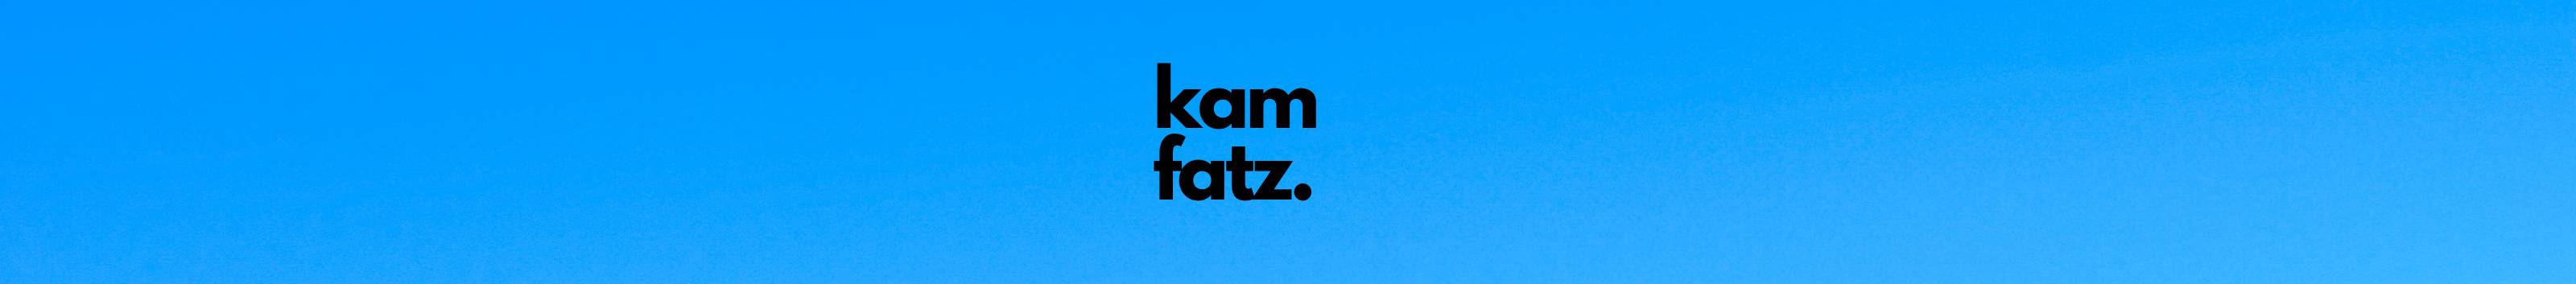 Banner de perfil de Kam Fatz